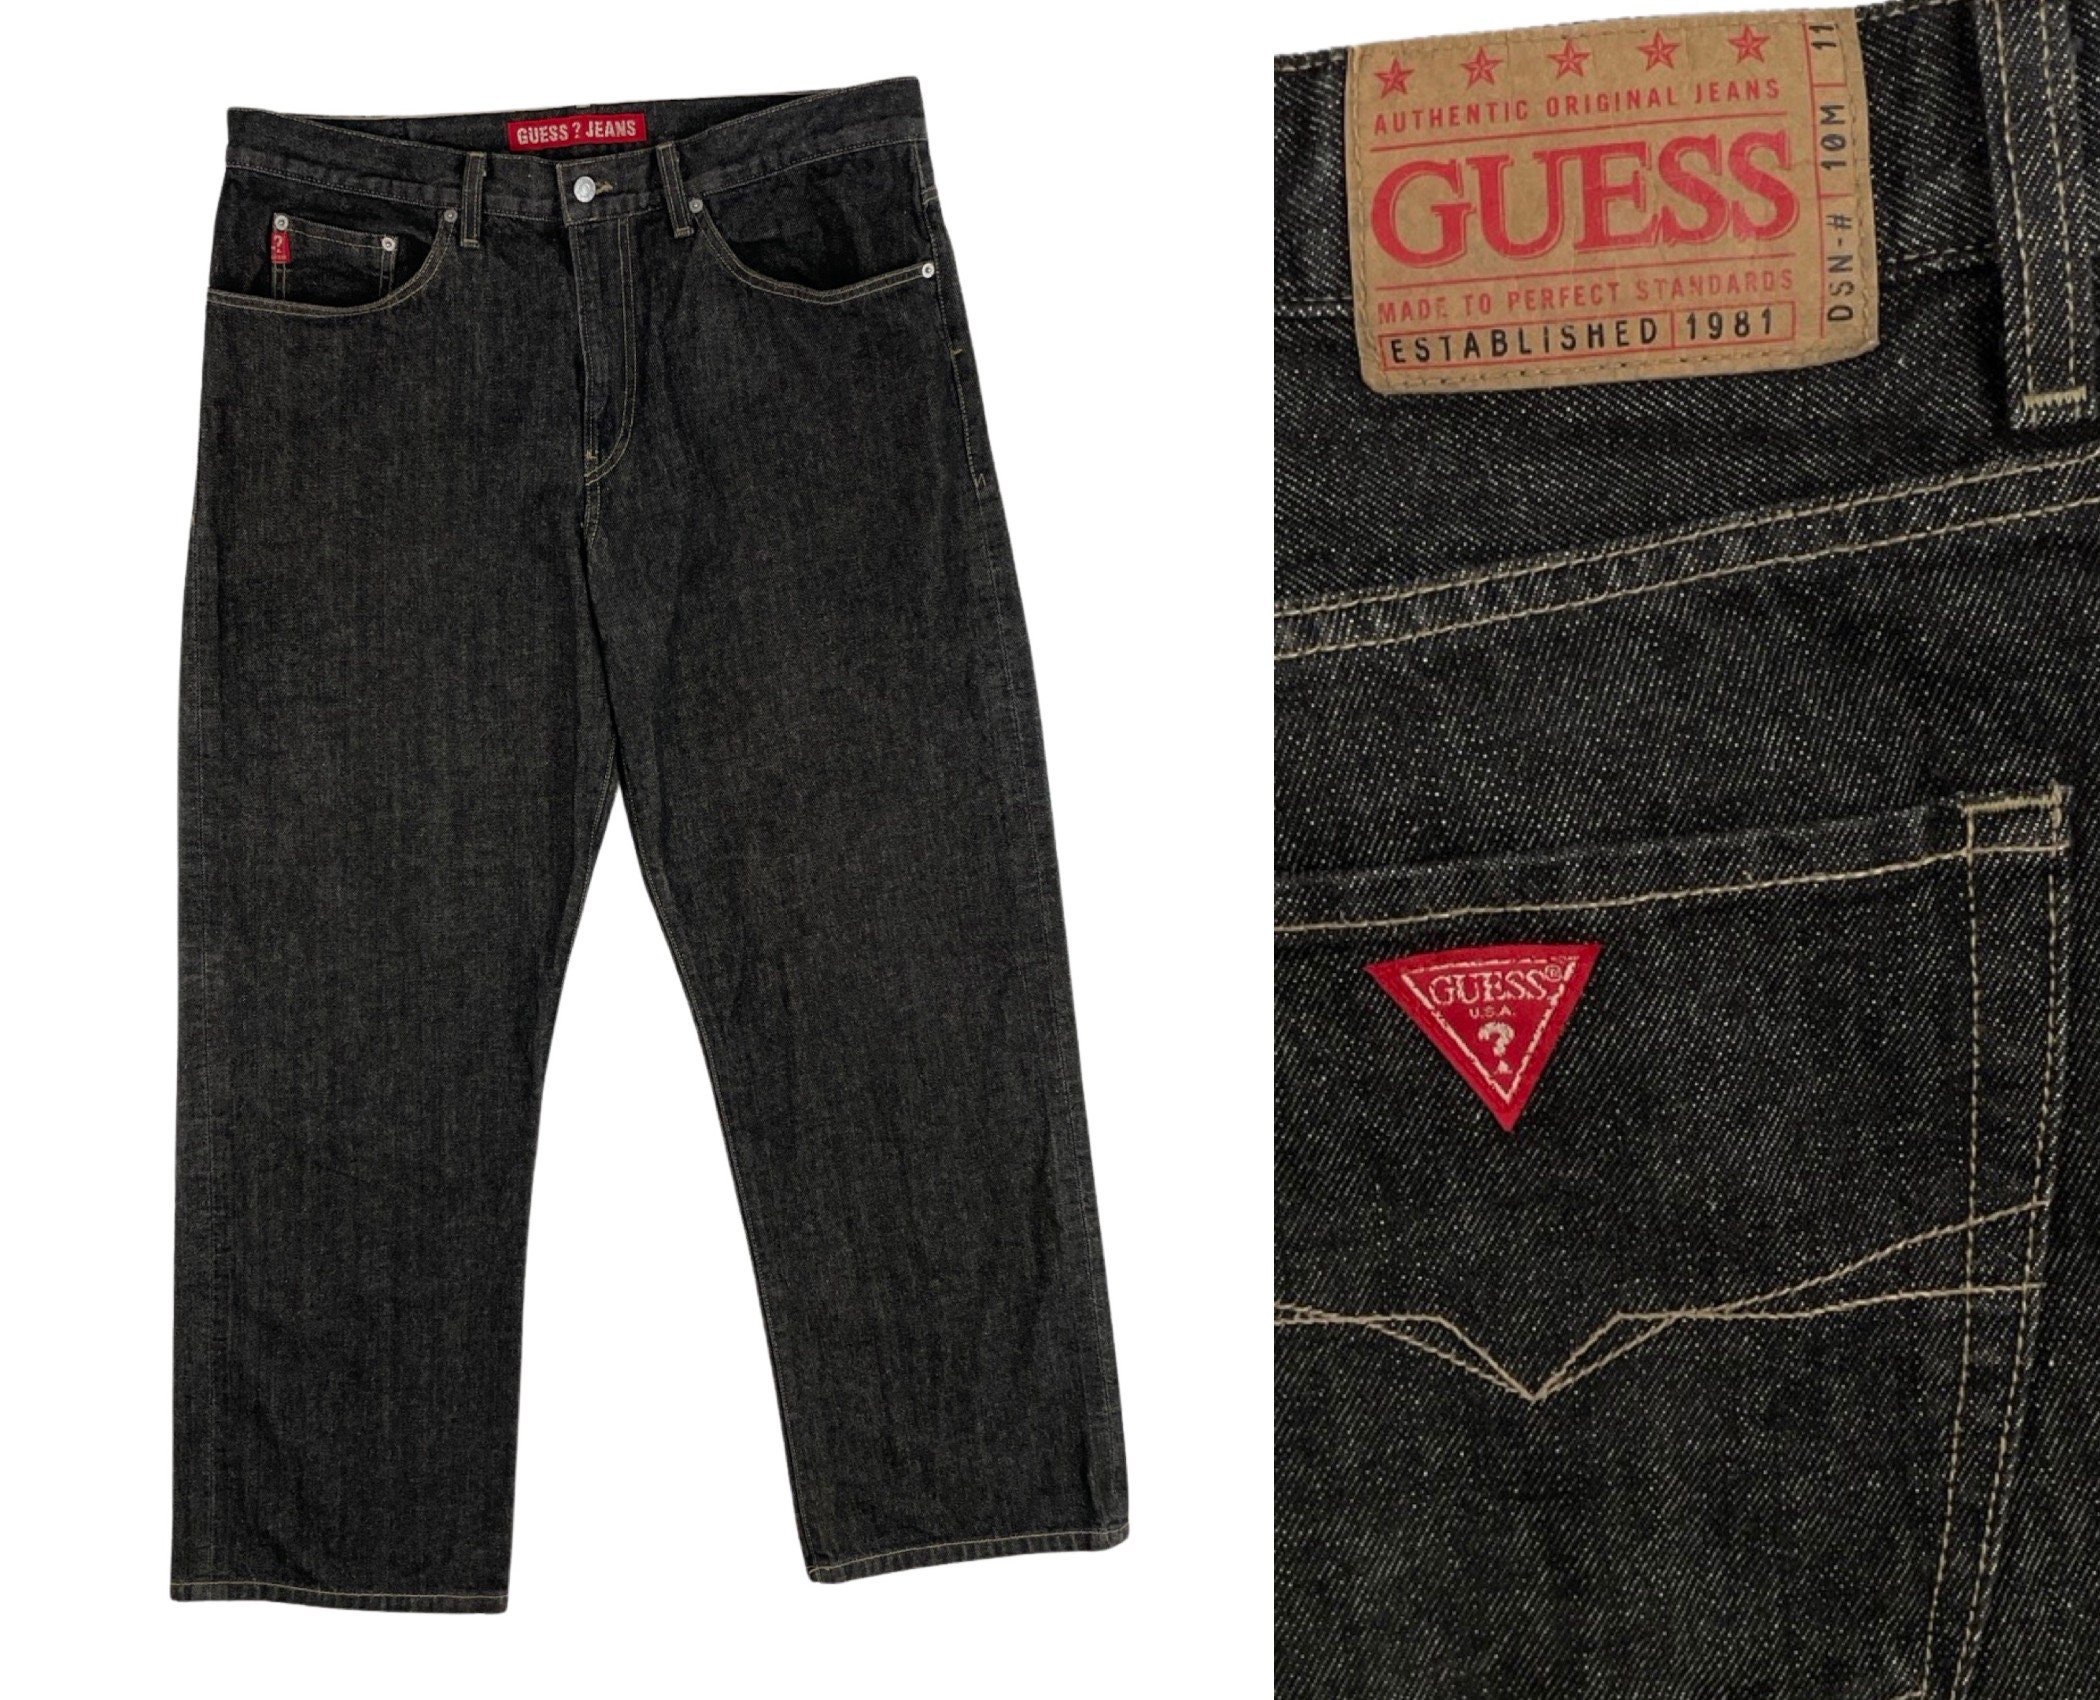 Vintage Mens Guess Jeans 90s Black Stone Wash Denim Jeans Mens Size 38x32  38 Waist 32 Inseam 